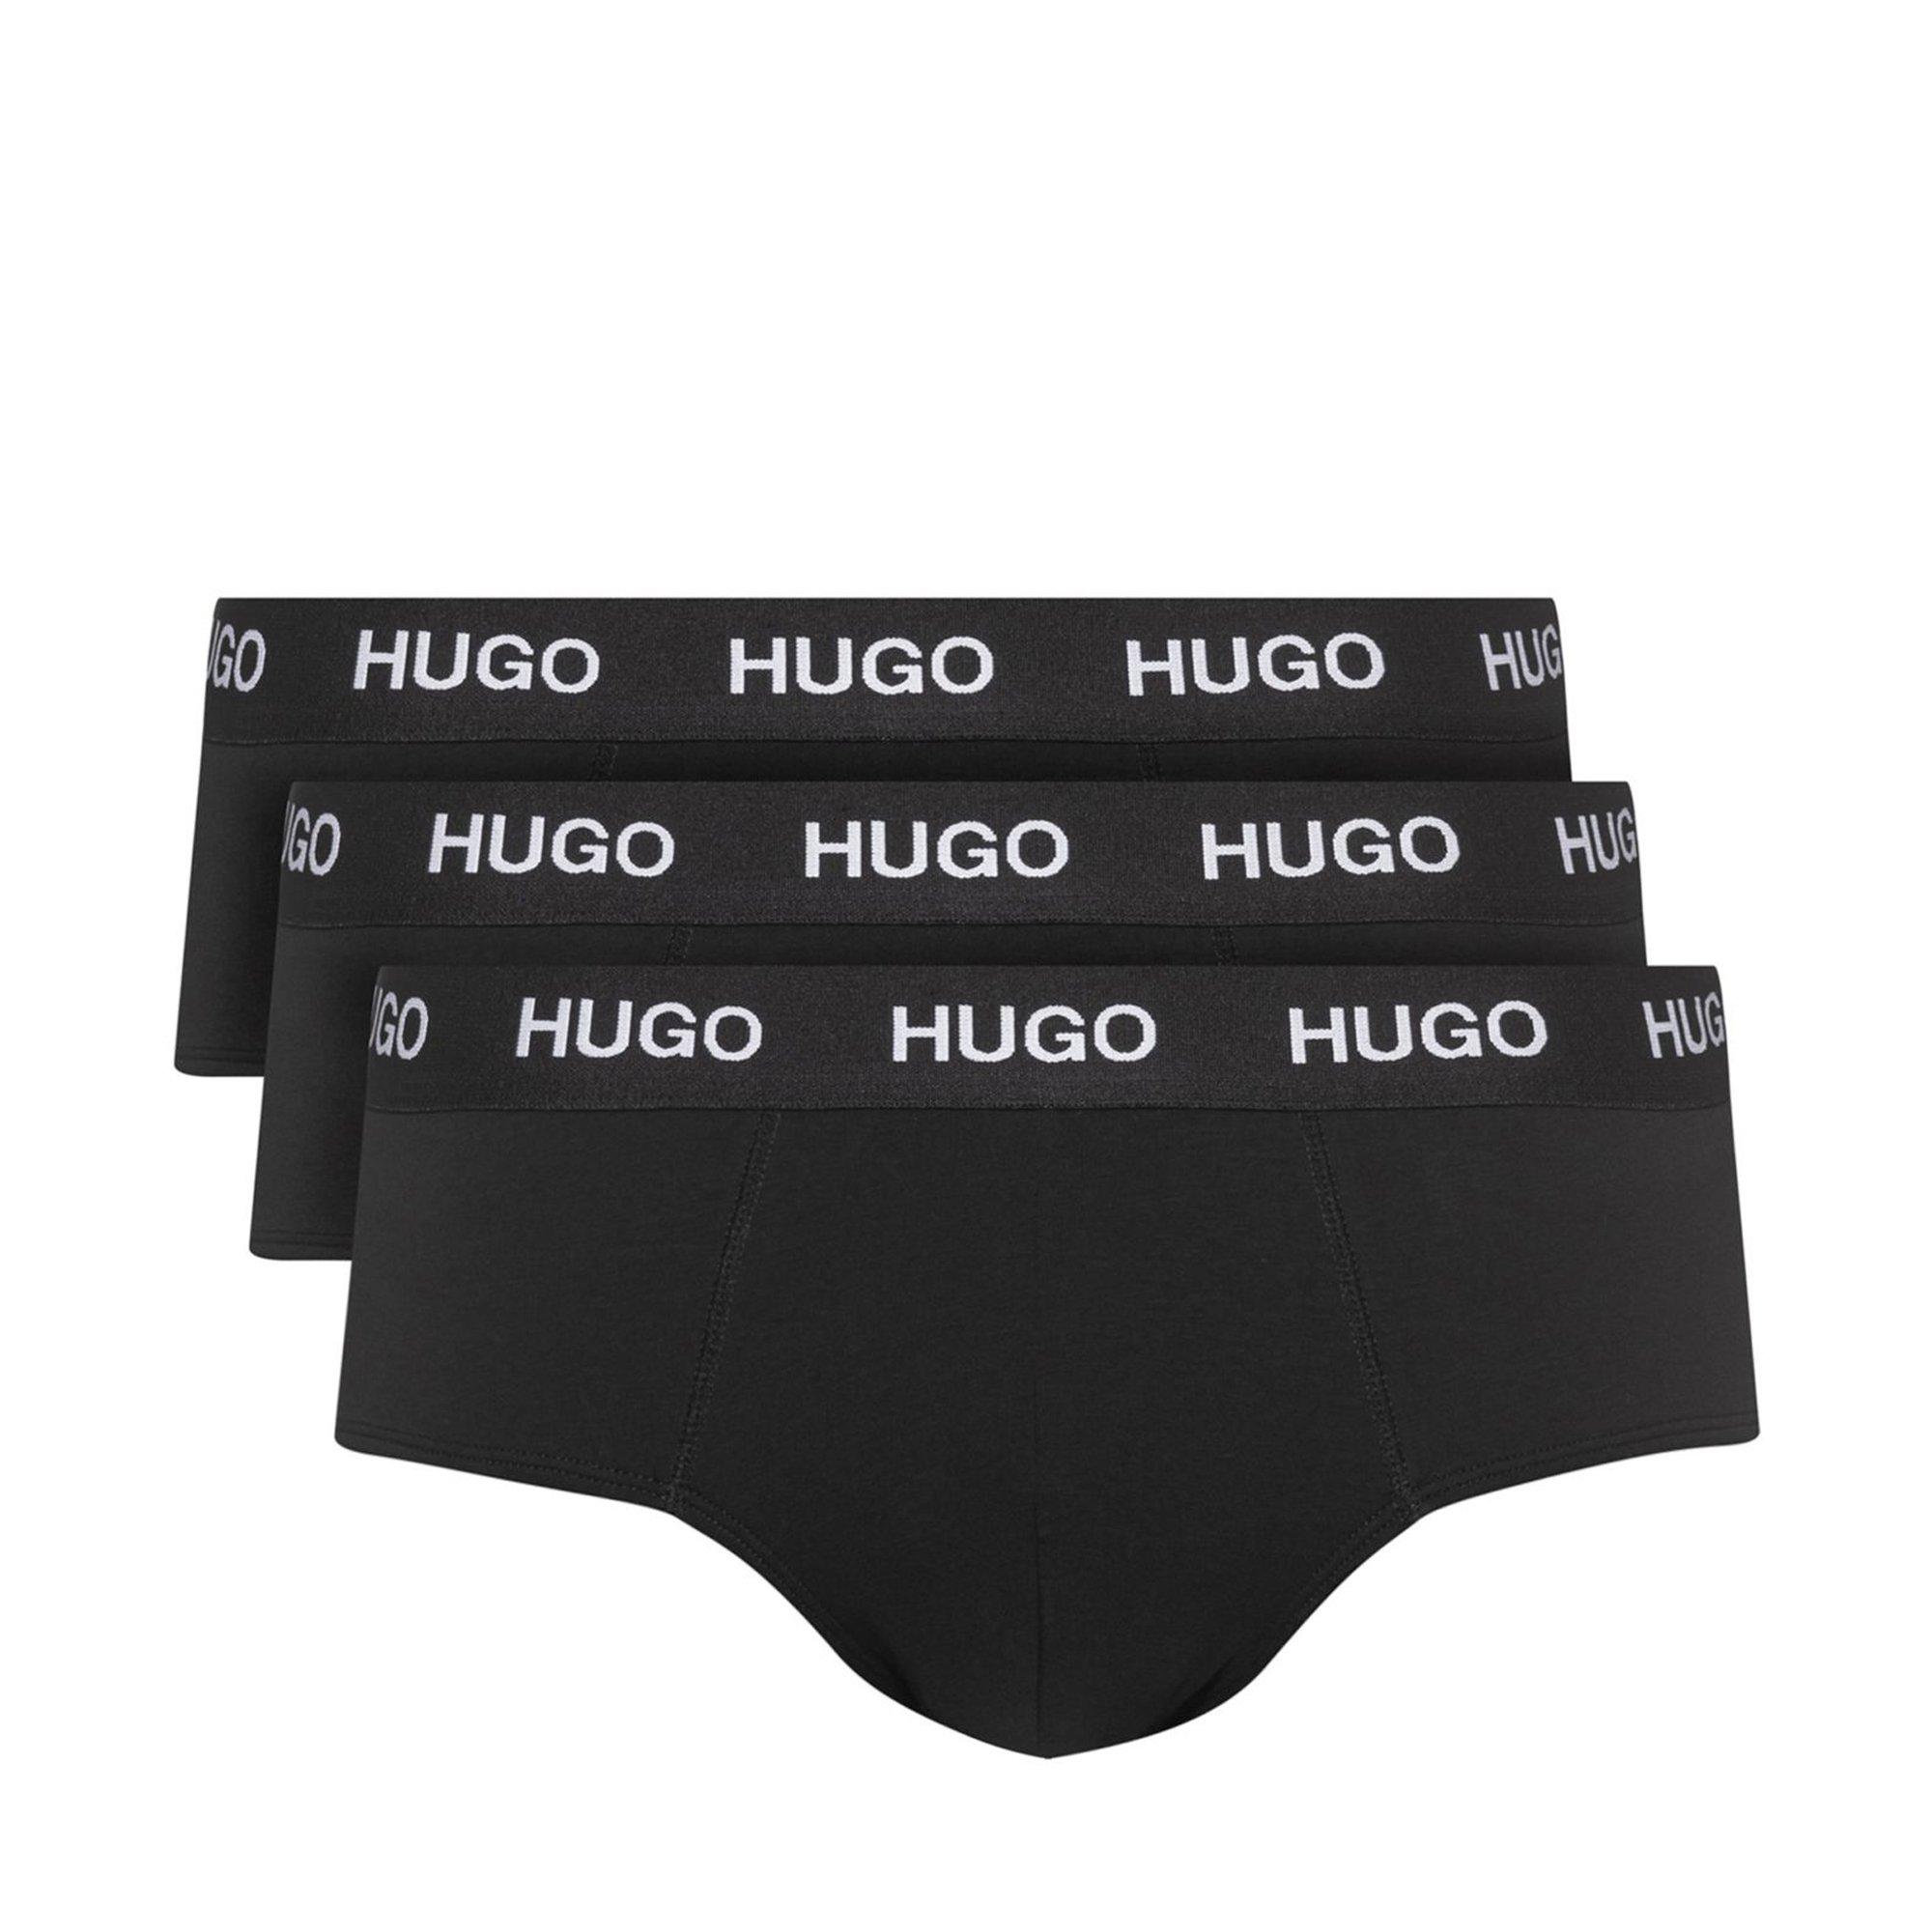 HUGO Hip brief triplet pack Lot de 3 slips, sans ouverture 